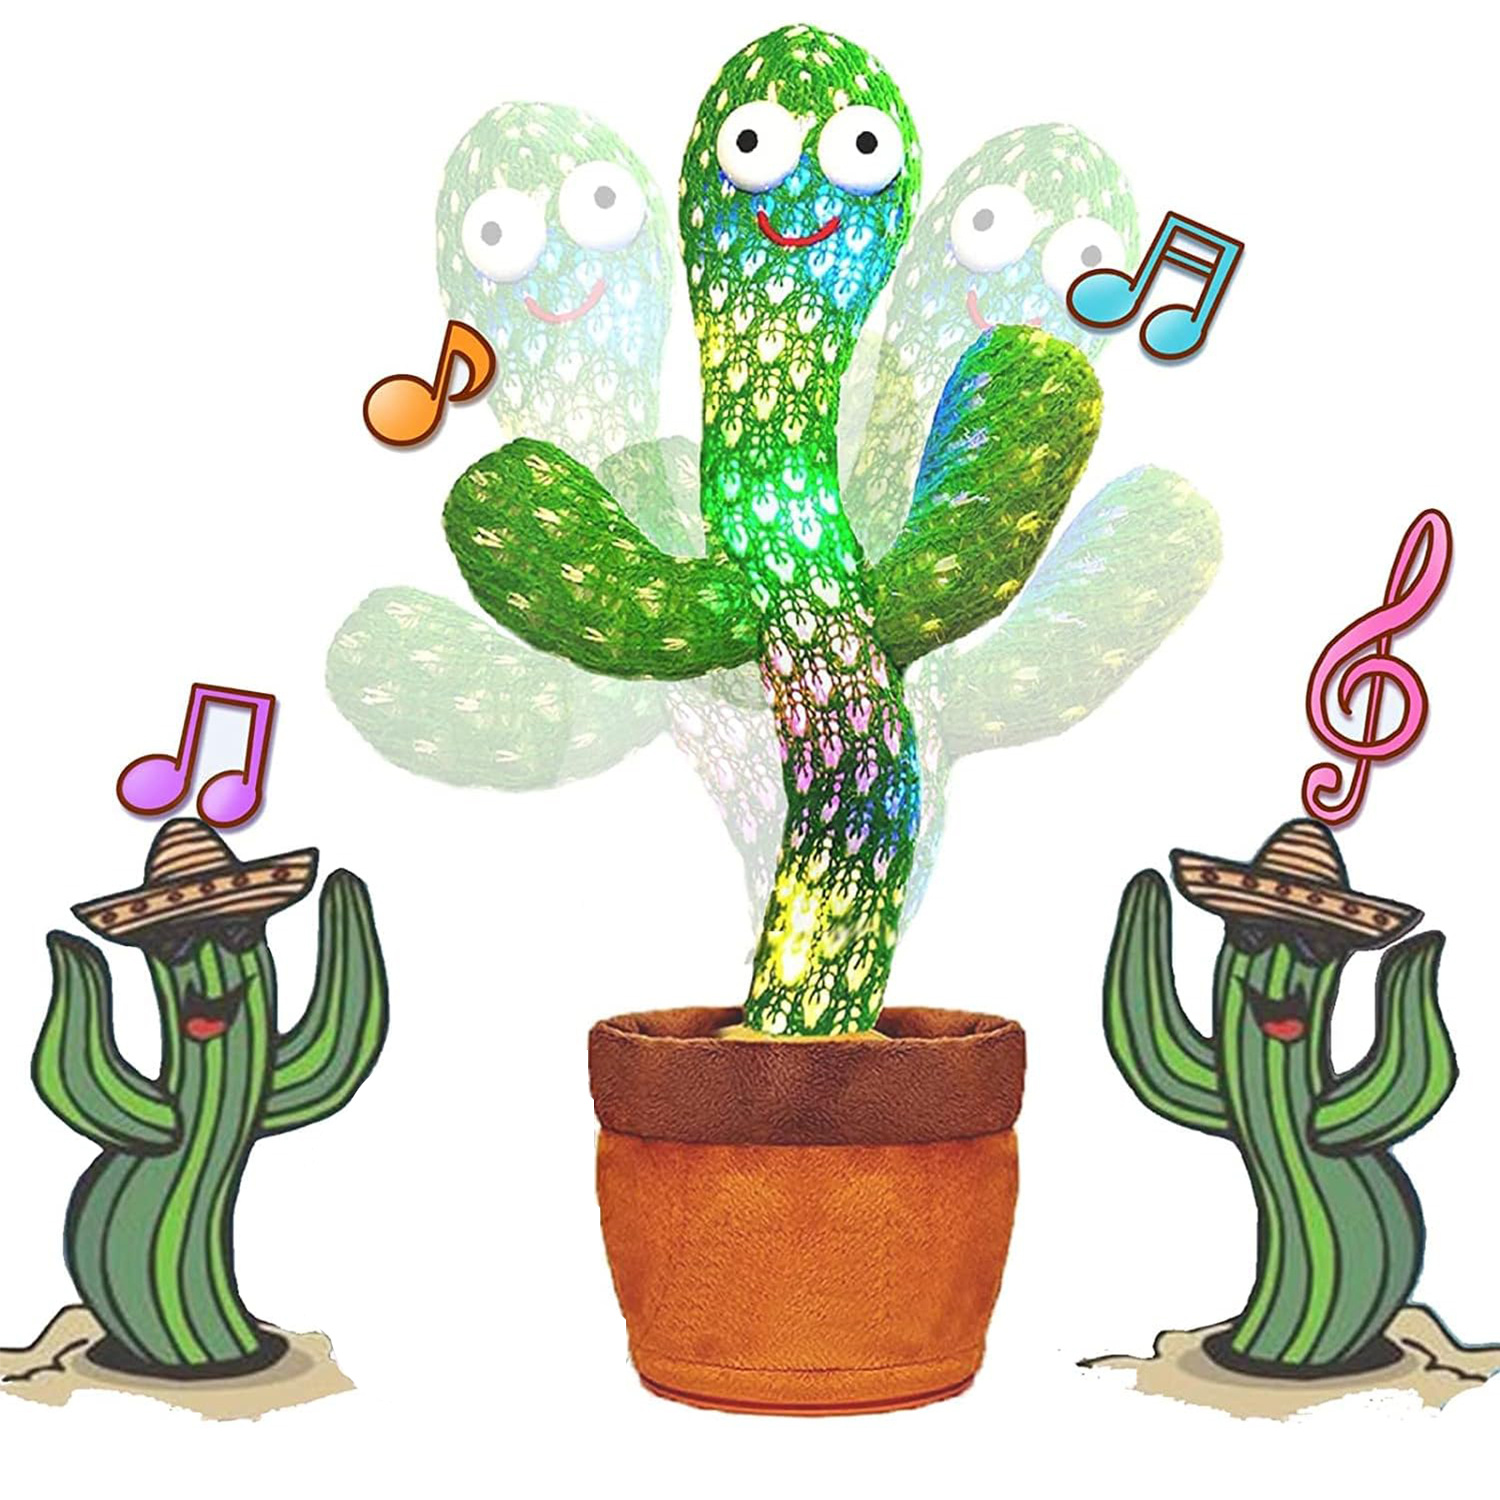 Juguete de cactus bailarín, juguete de cactus parlante, juguete de cactus  repetitivo, peluche eléctrico de cactus bailarín para bebés que hablan y